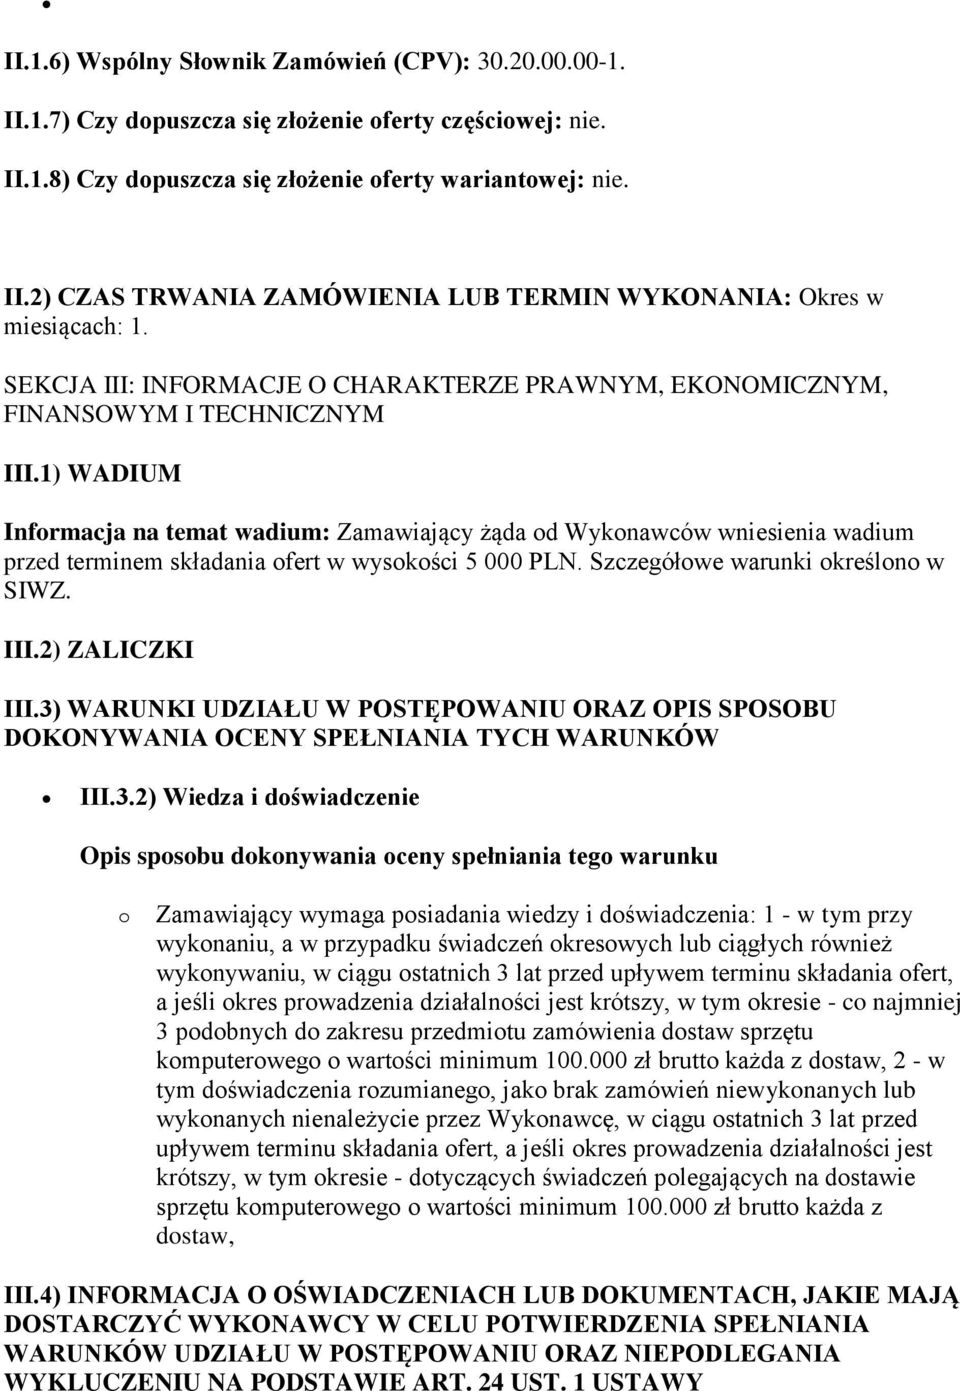 1) WADIUM Informacja na temat wadium: Zamawiający żąda od Wykonawców wniesienia wadium przed terminem składania ofert w wysokości 5 000 PLN. Szczegółowe warunki określono w SIWZ. III.2) ZALICZKI III.